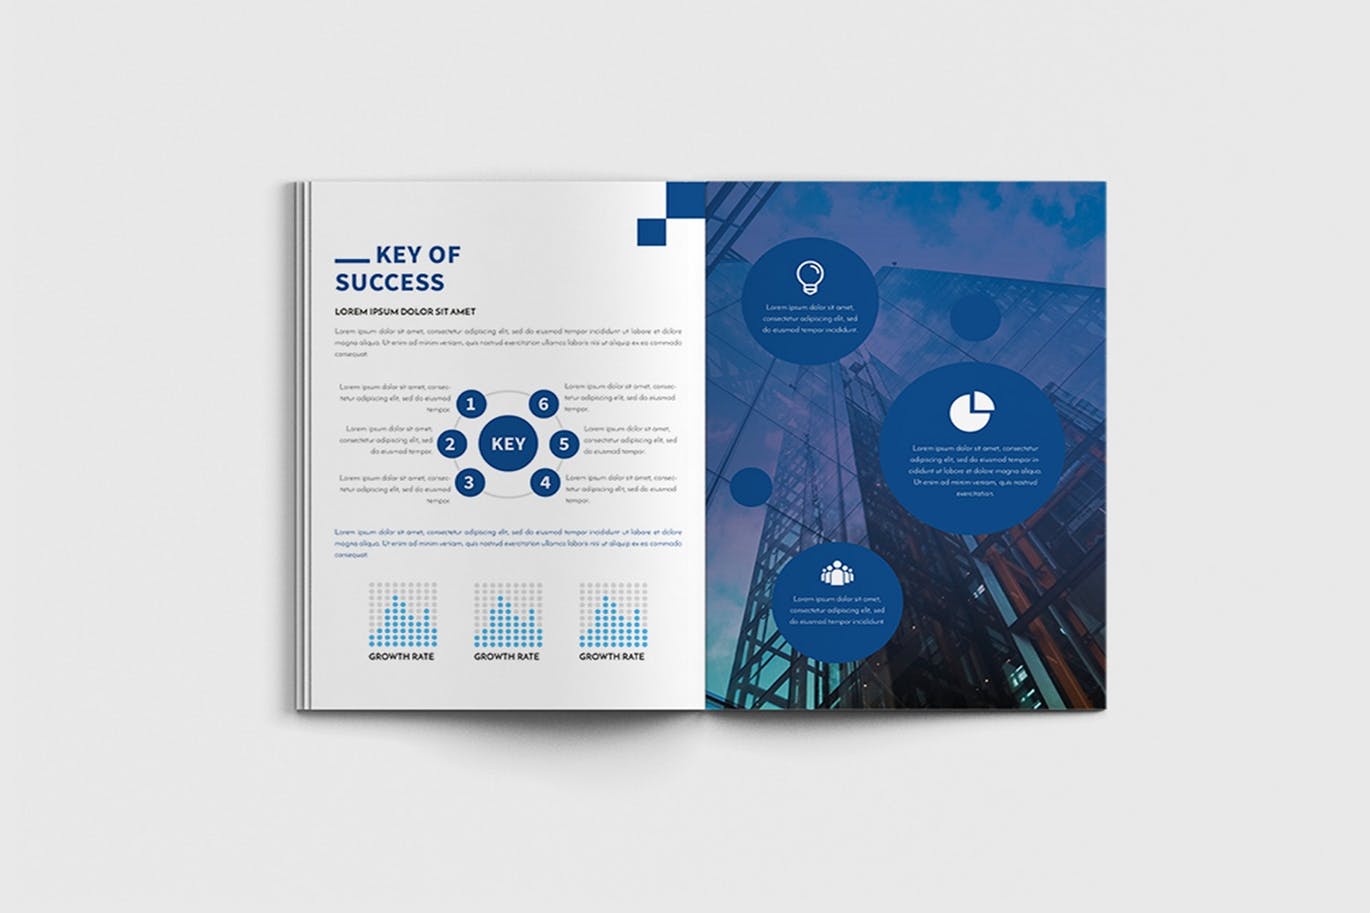 商业计划书/企业简介宣传画册设计模板 Walkers – A4 Business Brochure Template插图(8)